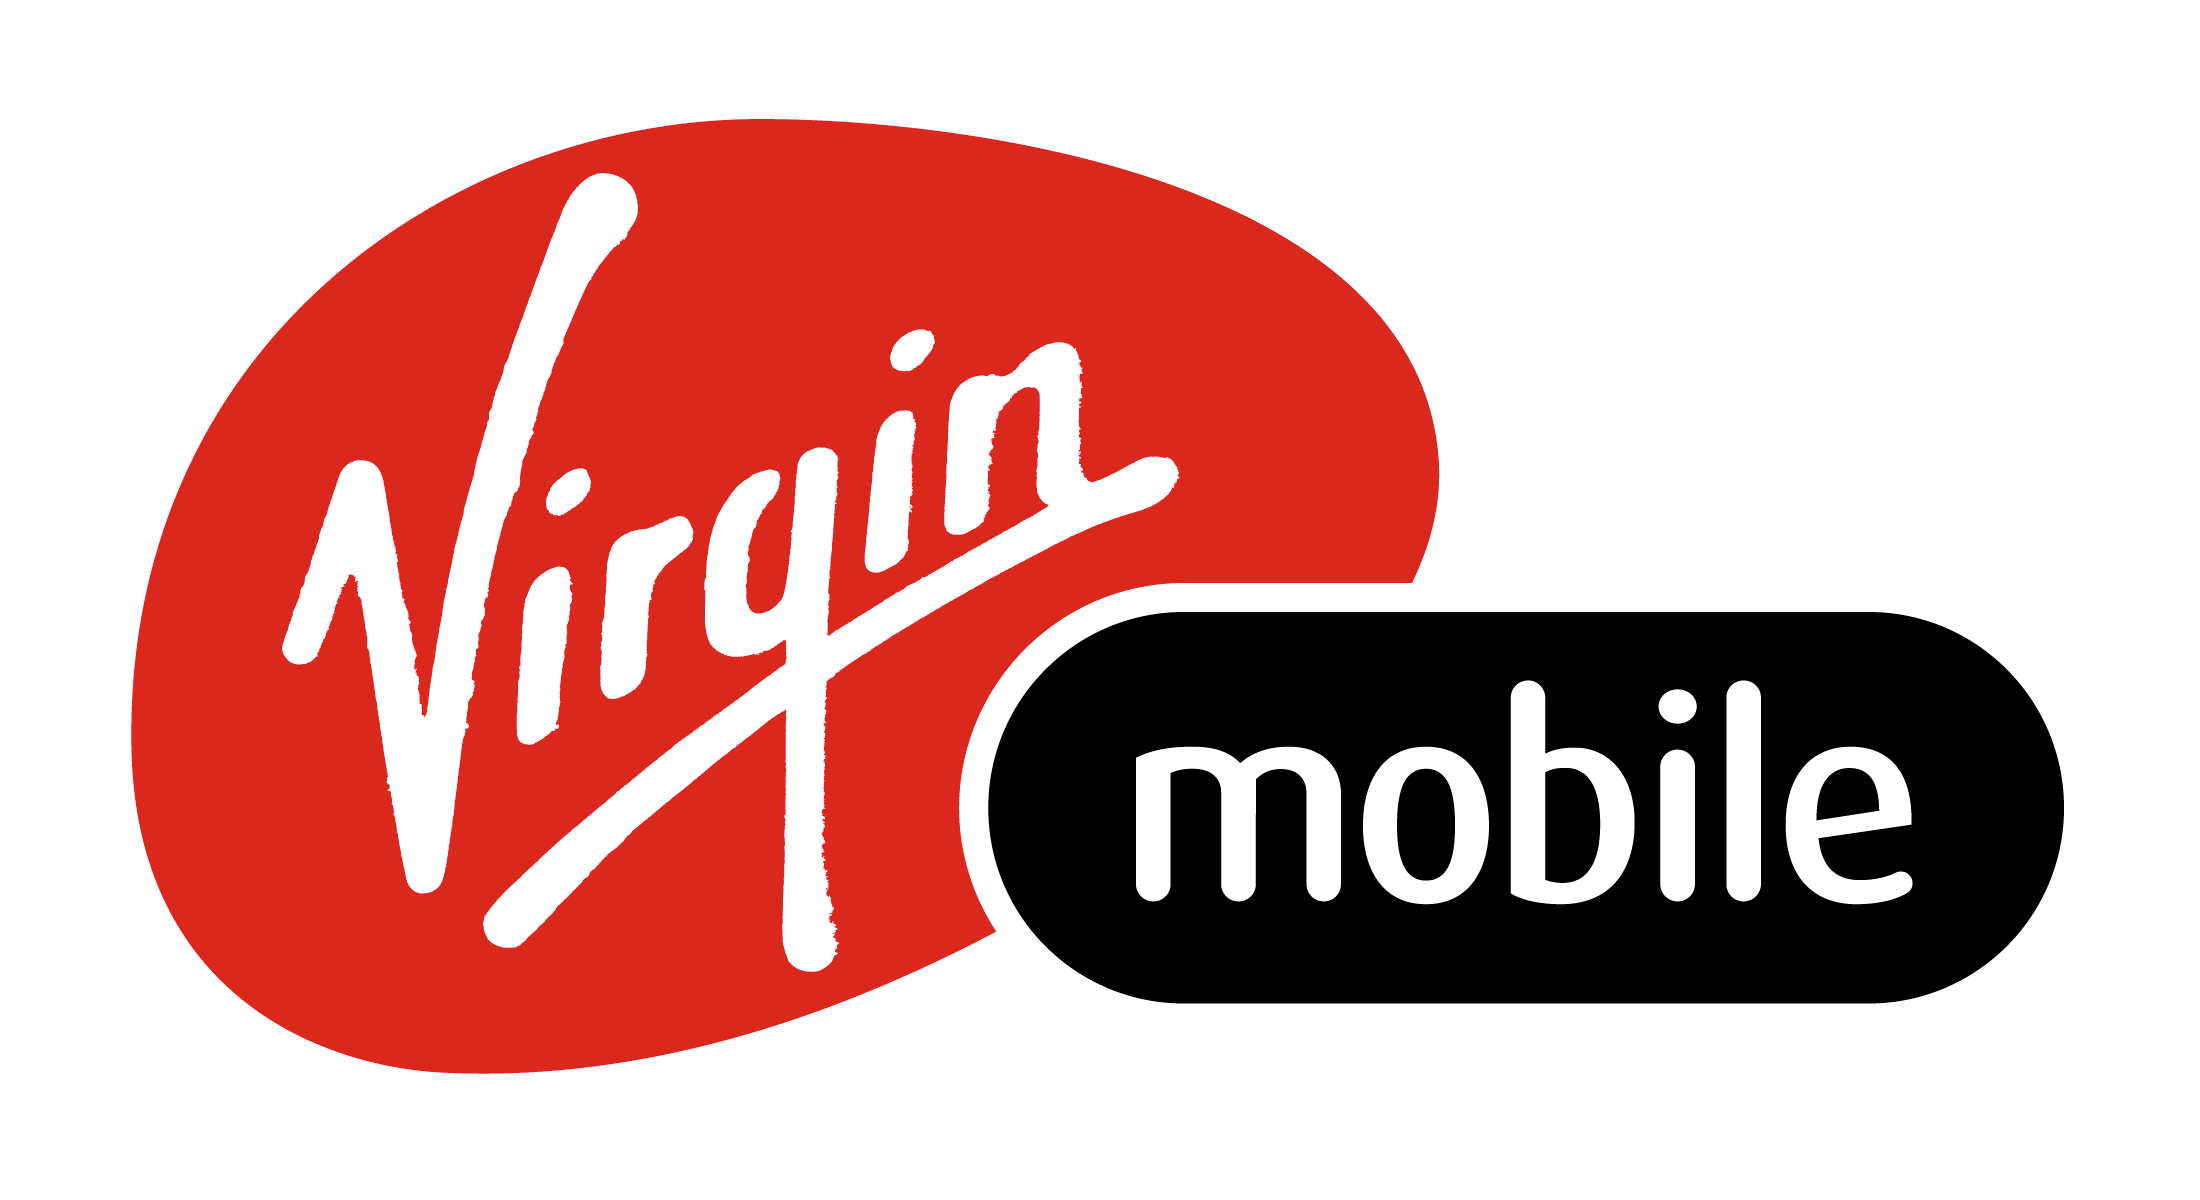 Virgin_Mobile_logo_logotype.png